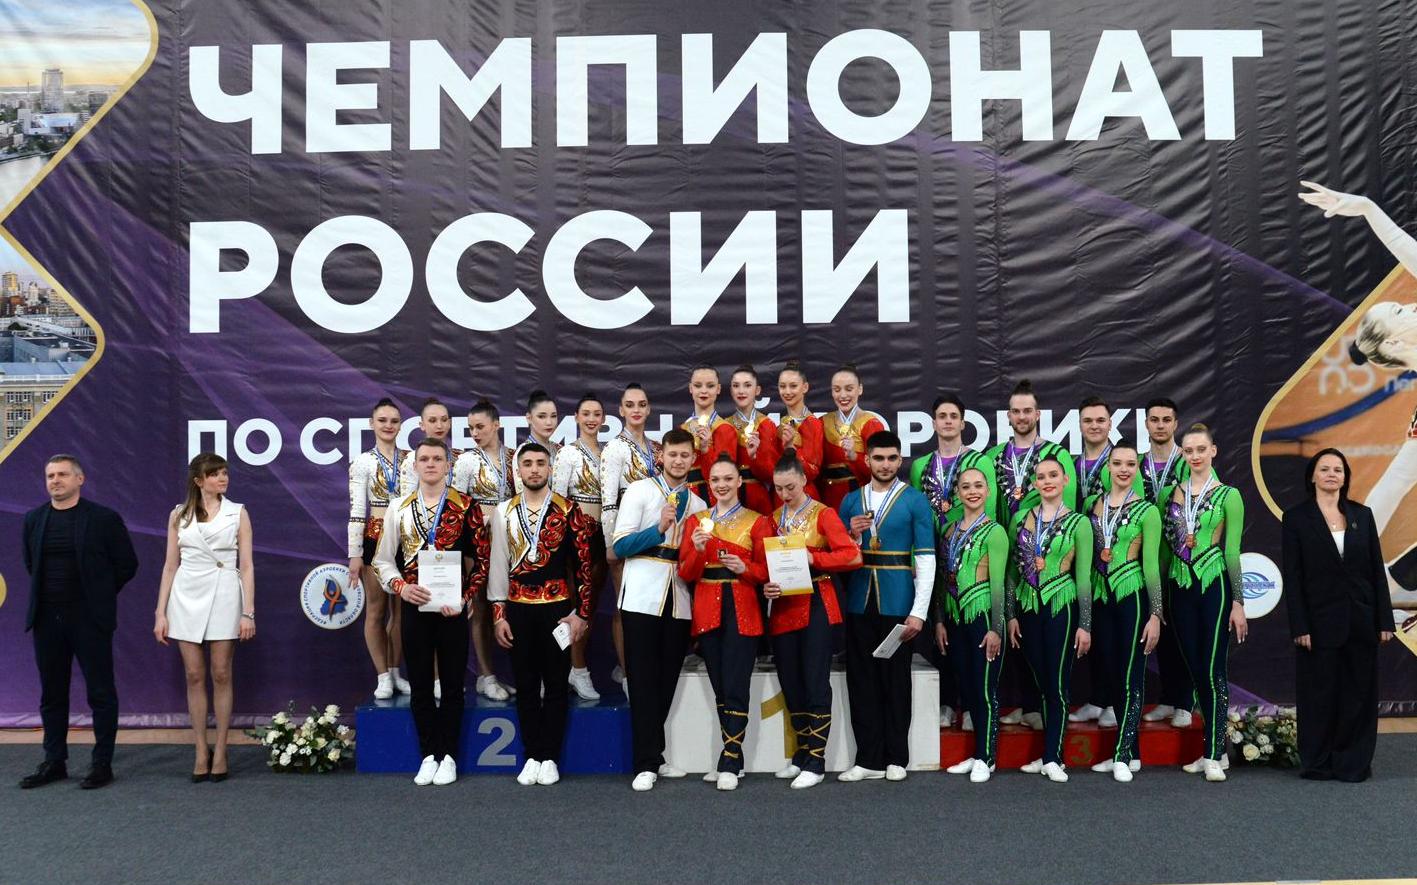 ФОТО к новости: Студентка НГПУ завоевала серебро и бронзу на чемпионате России по спортивной аэробике